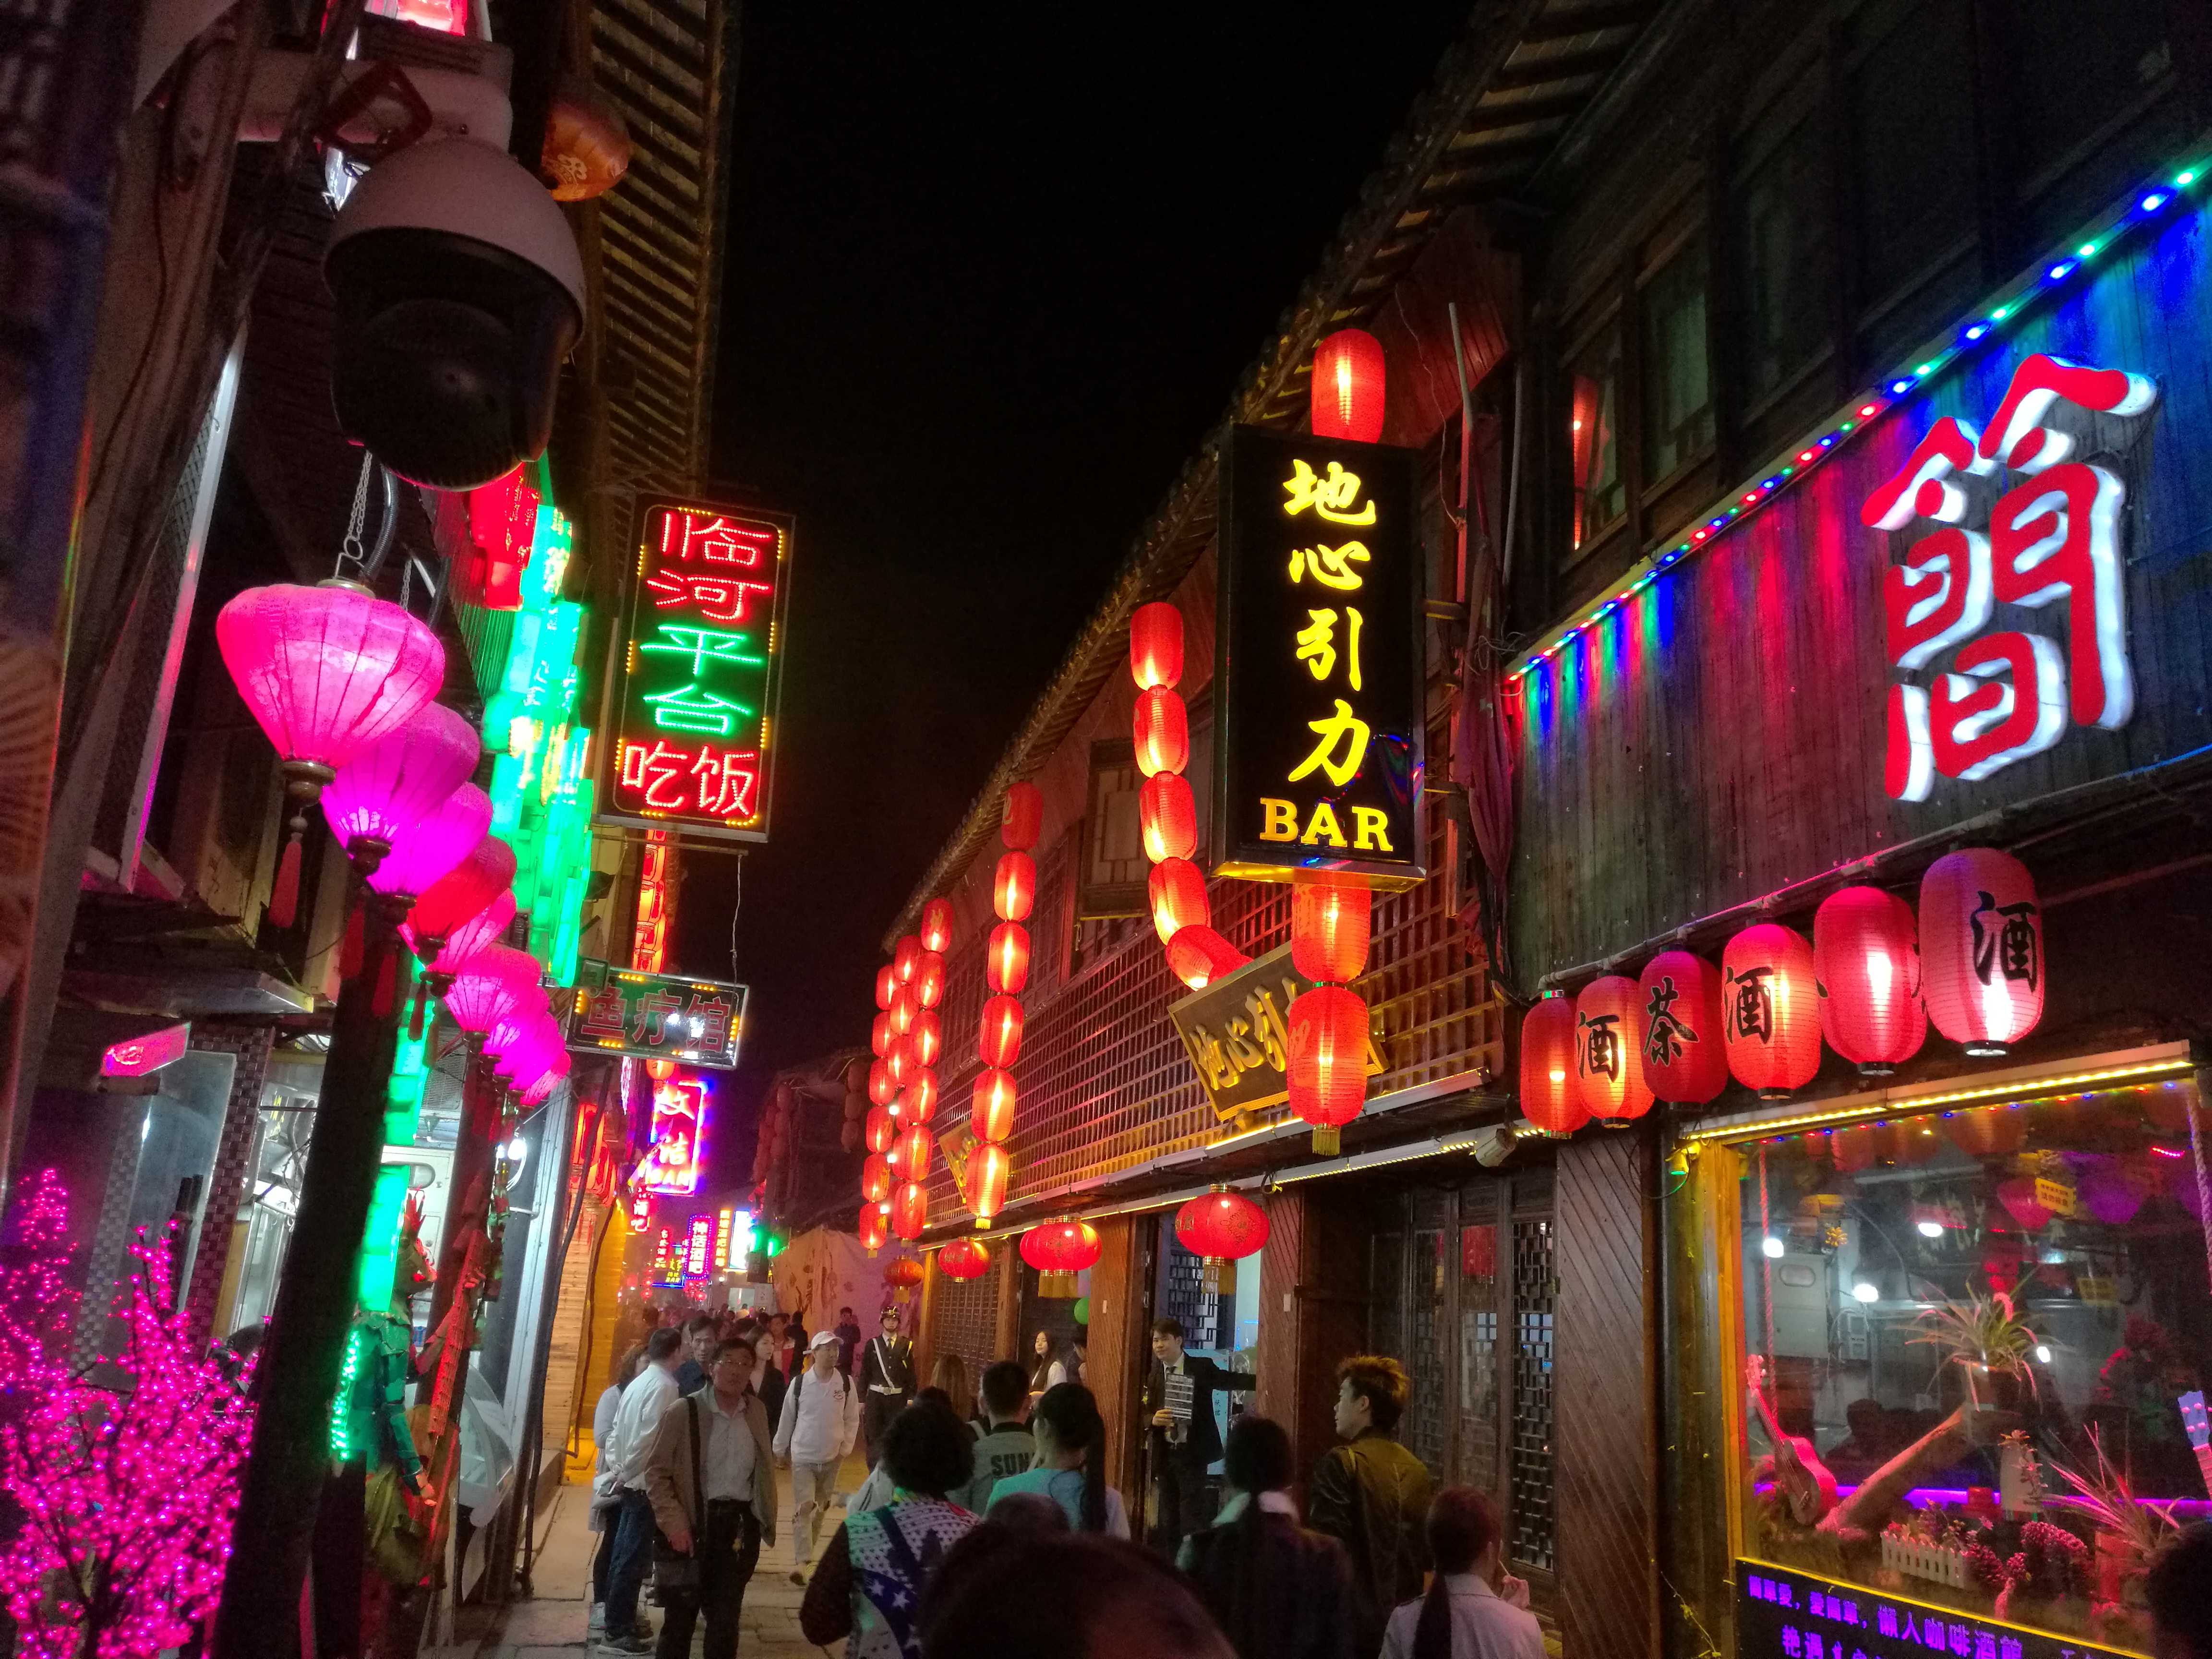 令人驻足 提到西塘的夜晚 总会提到酒吧一条街的灯红酒绿 这时候(平日